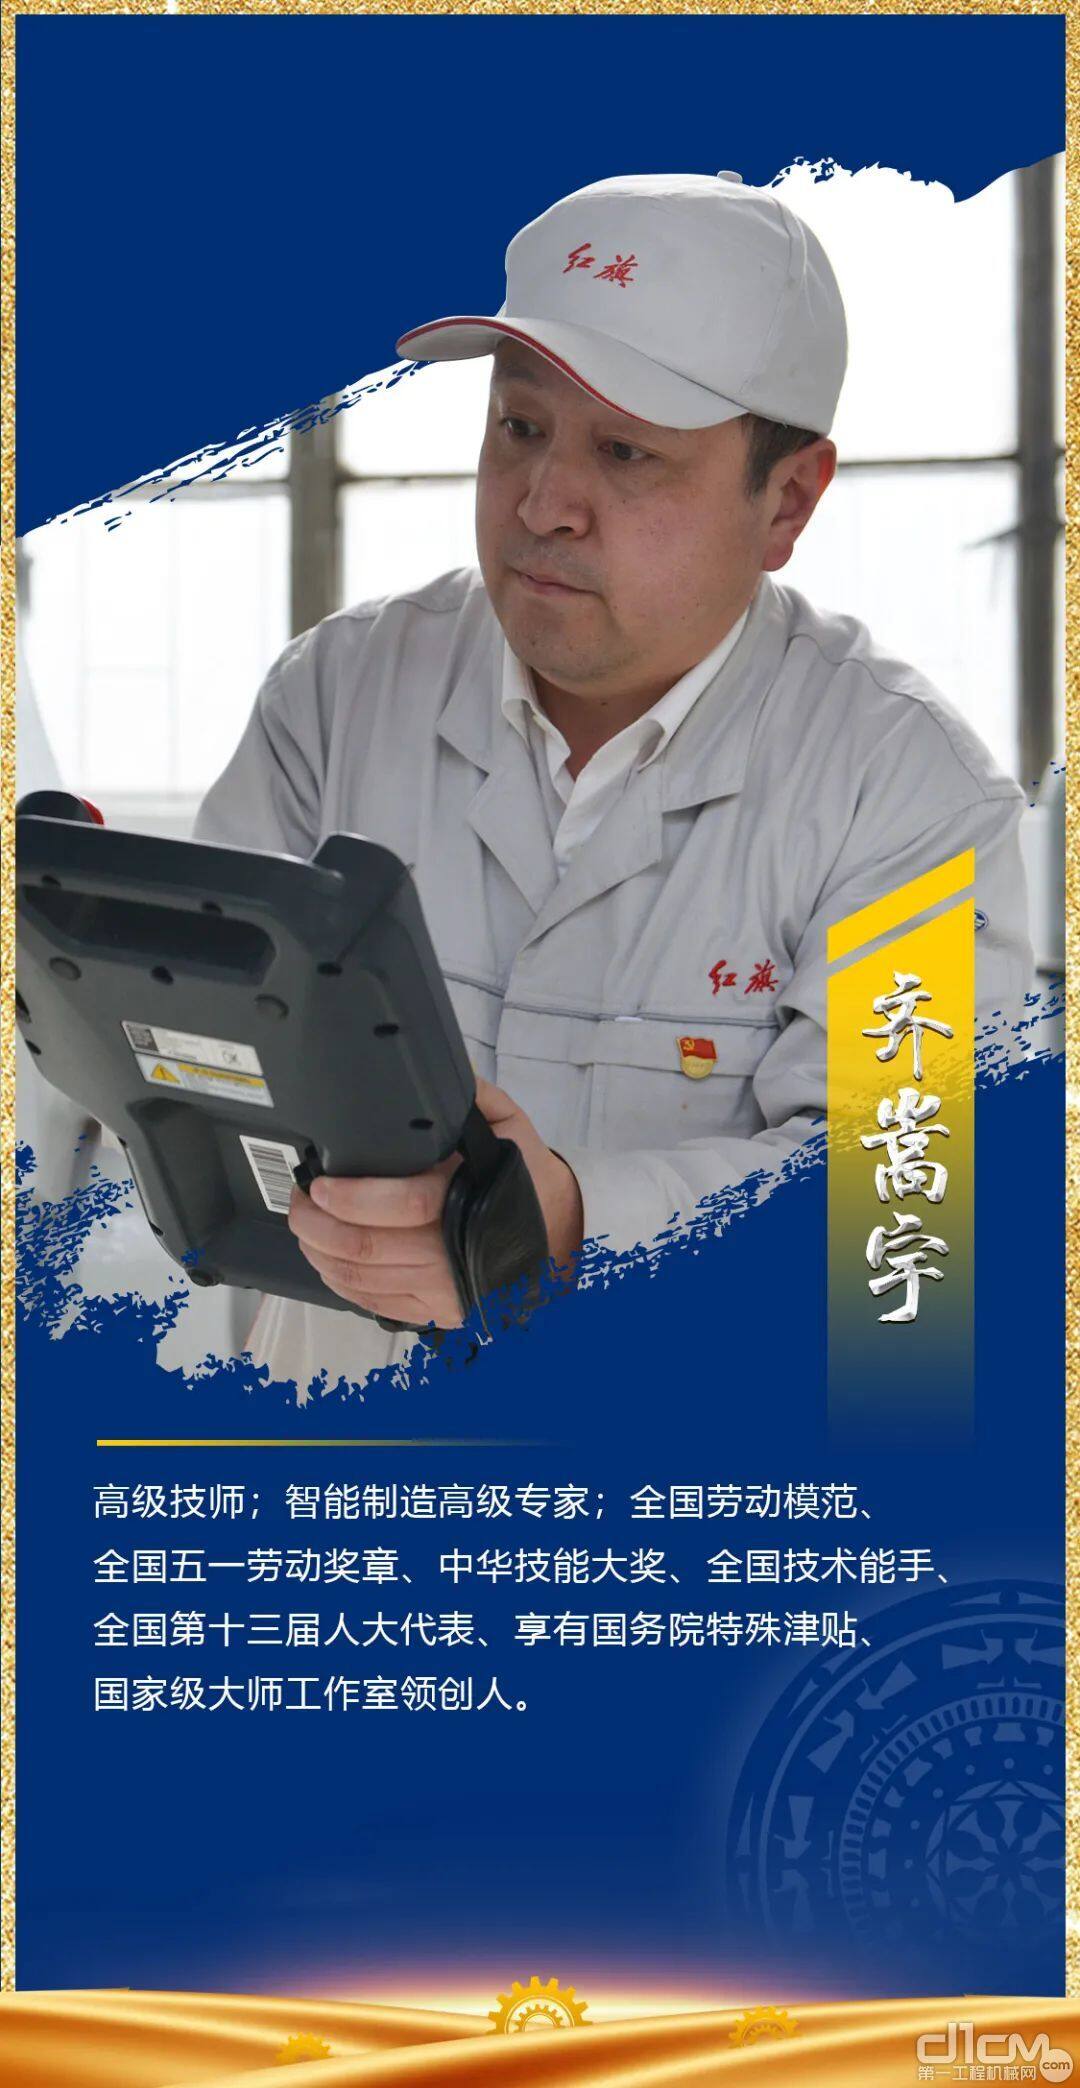 高级技师,全国劳动模范,五一劳动奖章得主:齐嵩宇